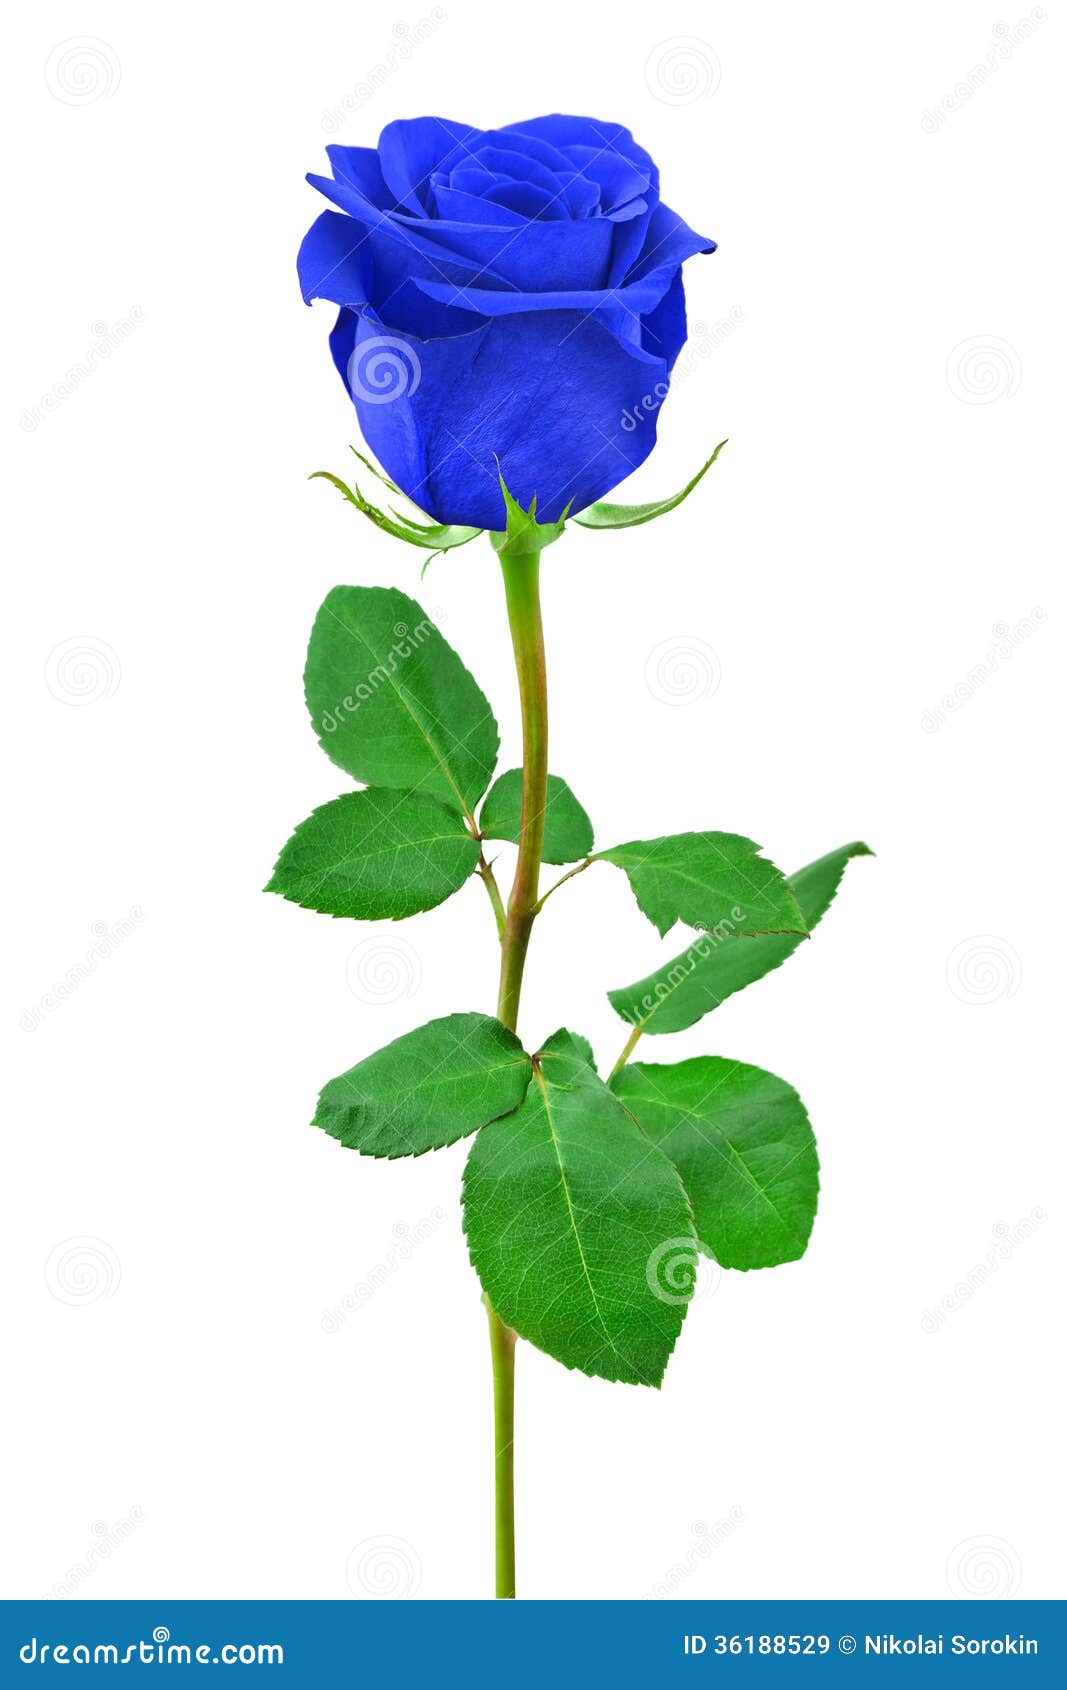 Blue rose stock image. Image of decoration, background - 36188529